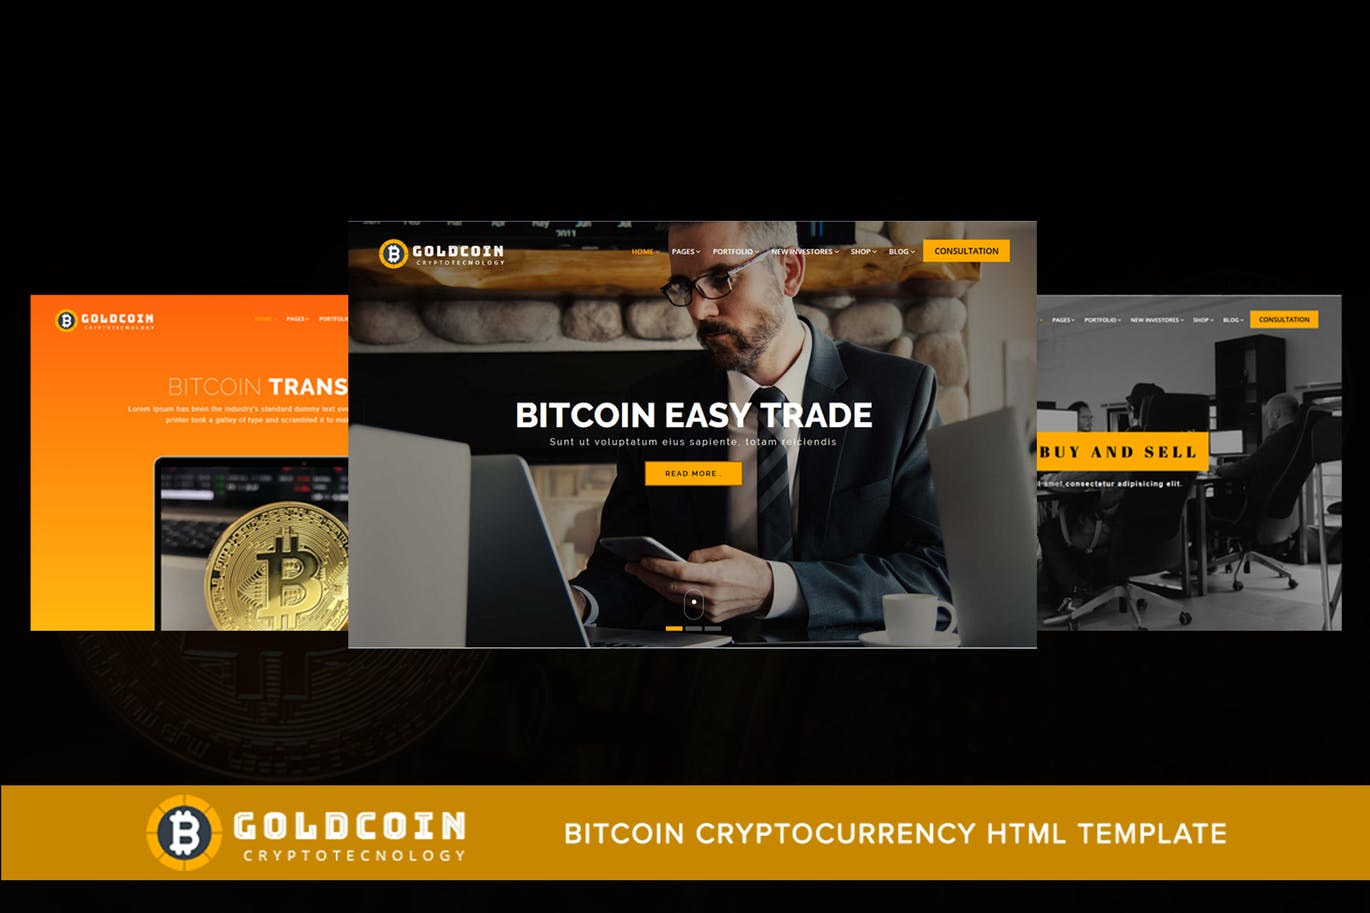 比特币加密货币主题网站HTML模板第一素材精选 GoldCoin – Bitcoin Cryptocurrency HTML Template插图